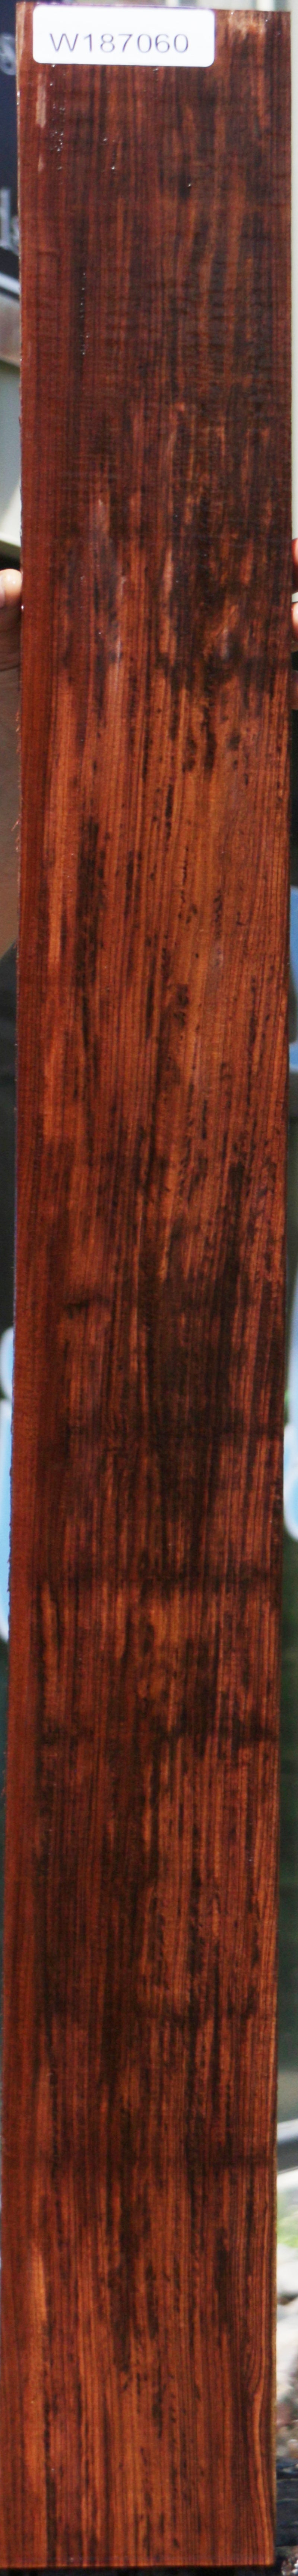 Bolivian Rosewood Lumber